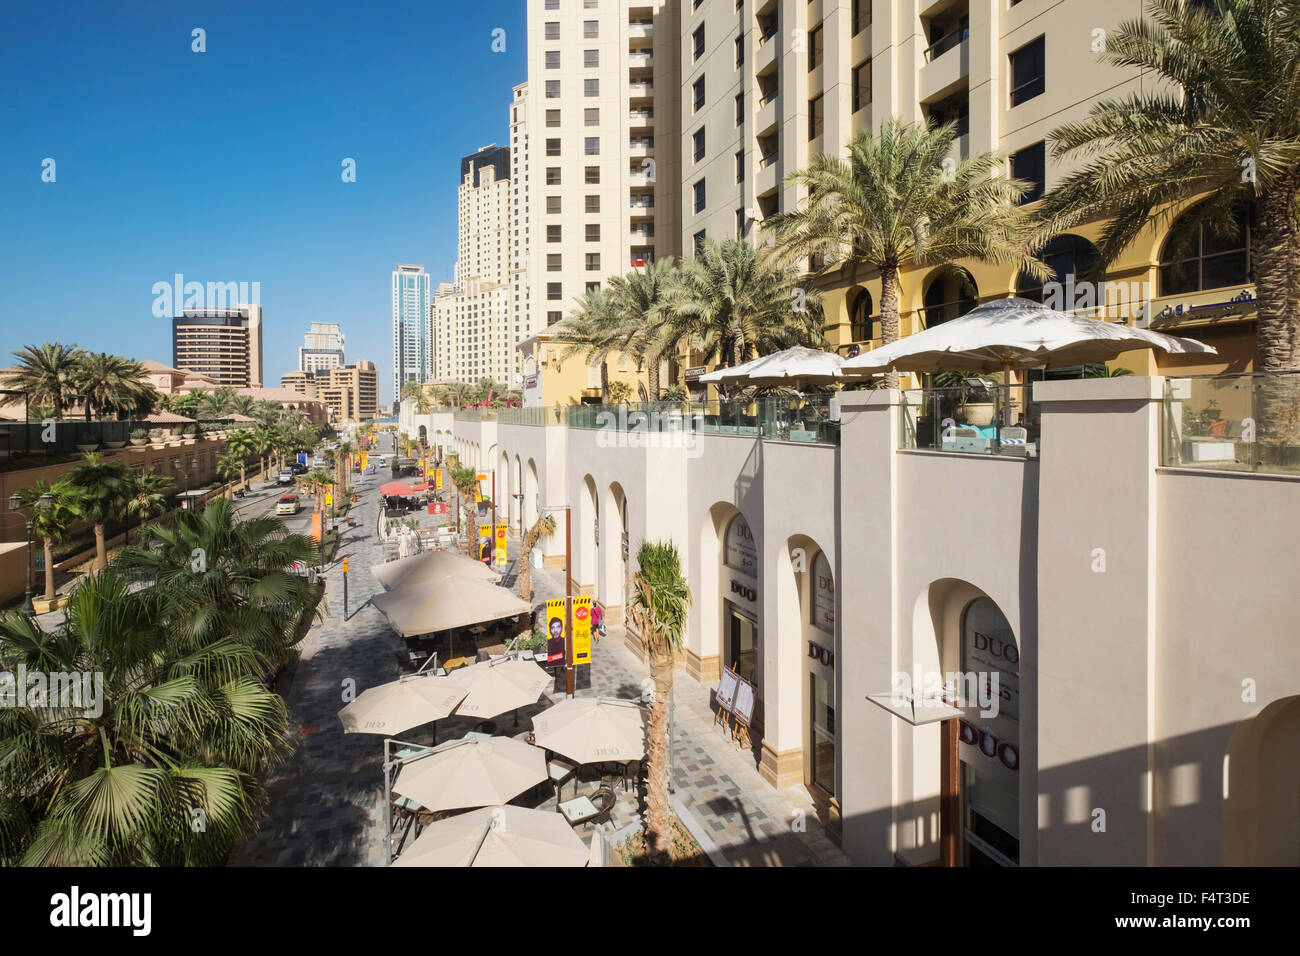 Vista a lo largo del paseo de compras y comer en la calle de la playa de Jumeirah Residences (JBR) en la zona del puerto deportivo de Dubai United Arab Emirat Foto de stock